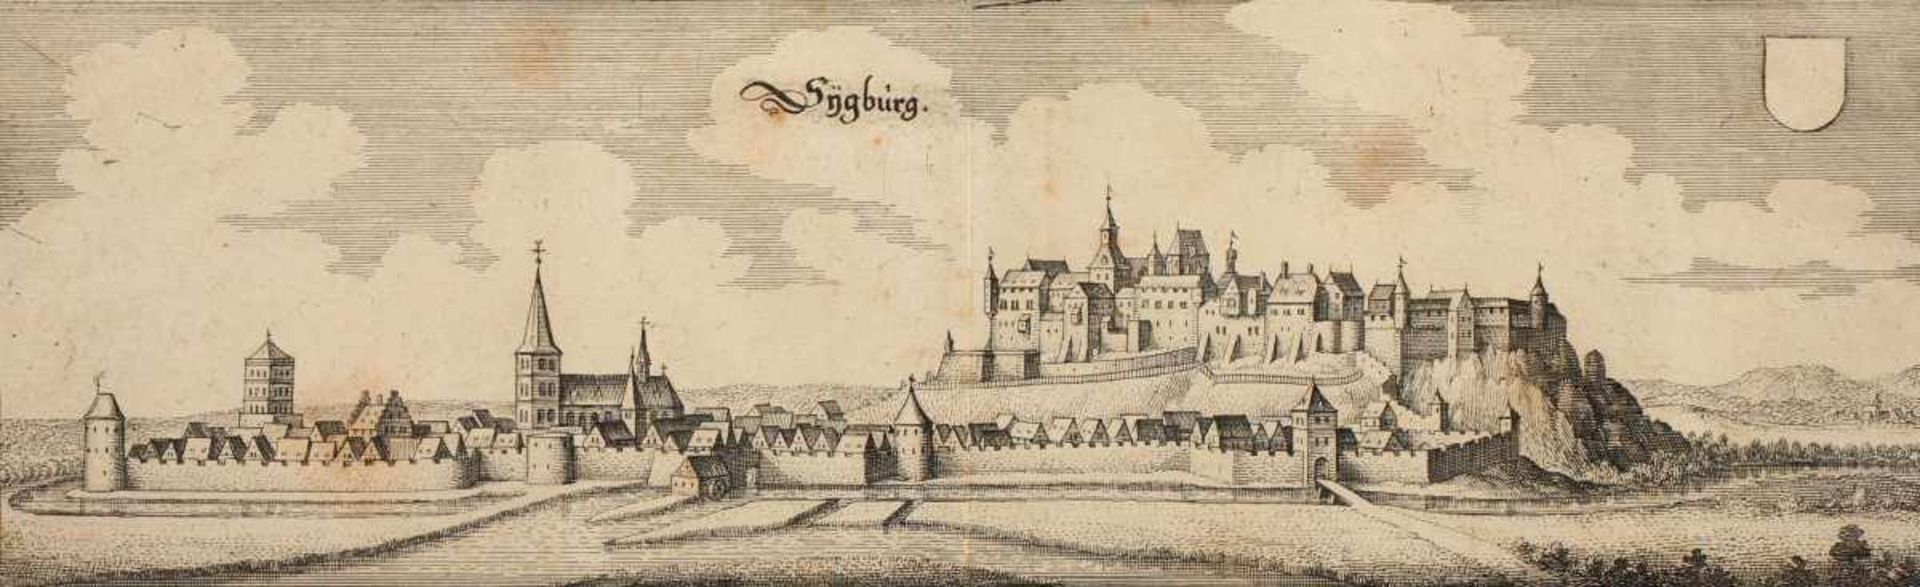 SIEGBURG, Panoramaansicht, Kupferstich, 11 x 32,5, M.MERIAN, um 1640, R. - Bild 2 aus 2